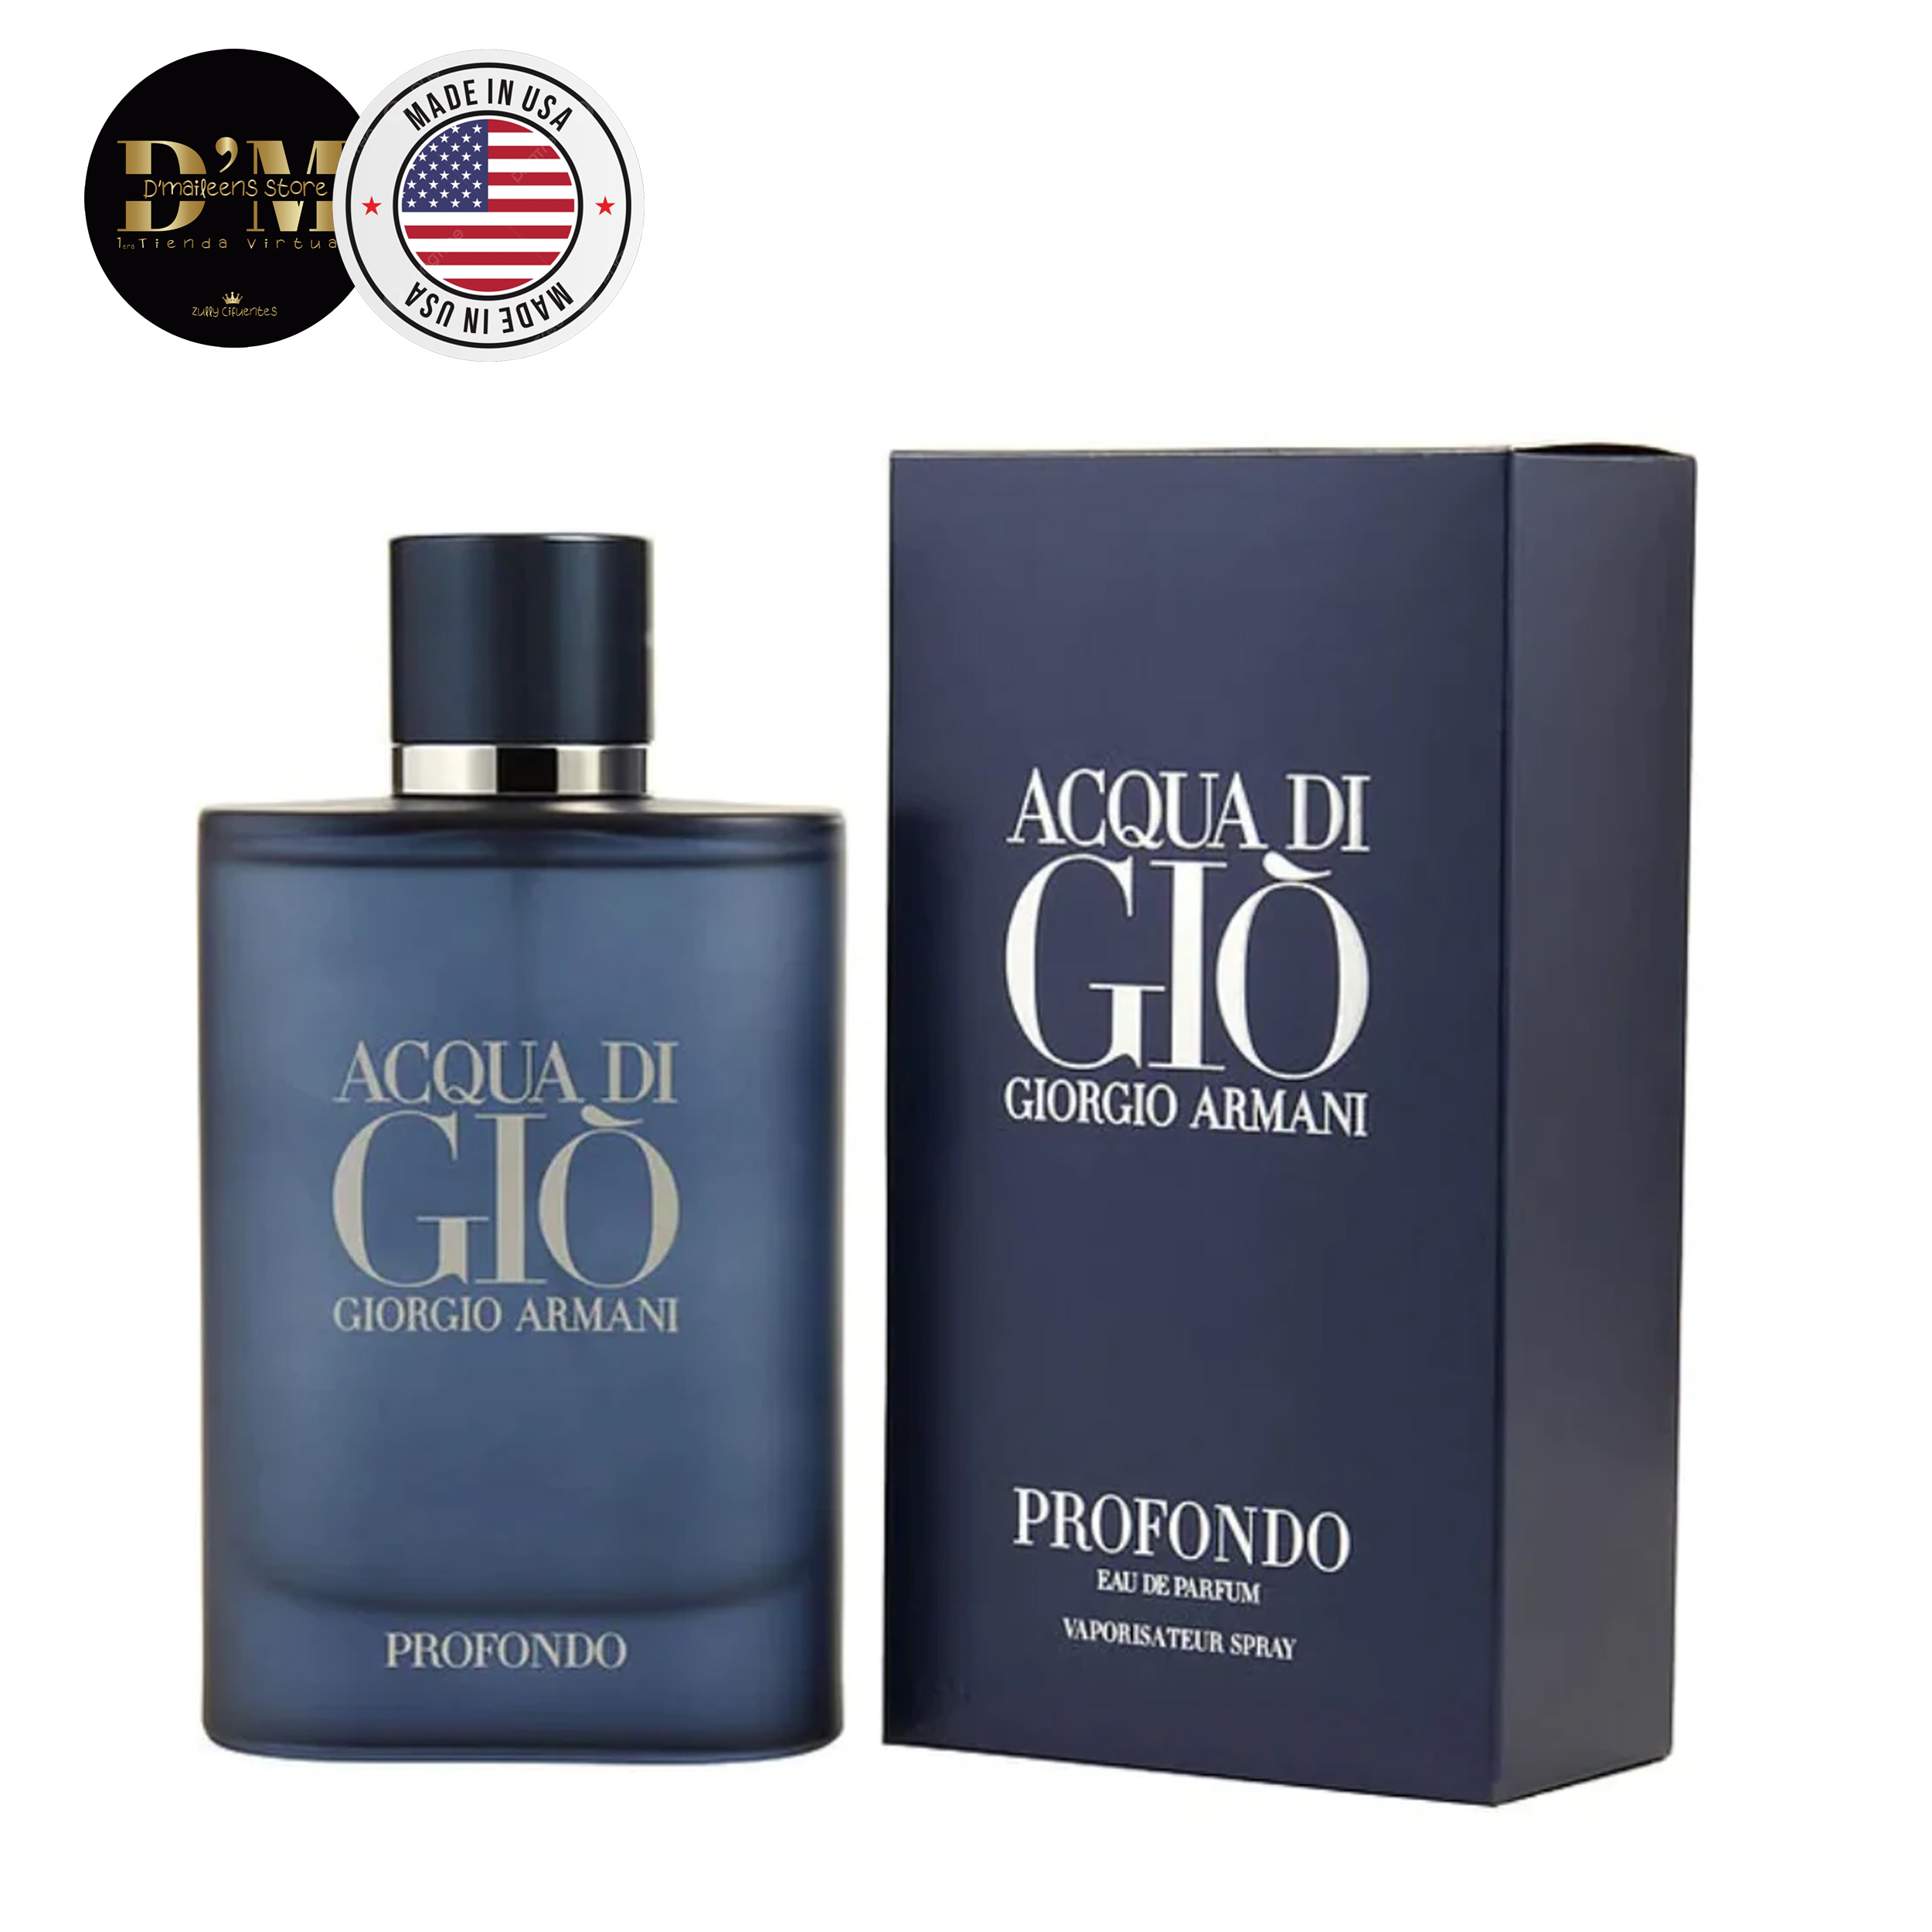 Perfume Acqua Di Giò Profondo Giorgio Armani     (Replica Con Fragancia Importada)- Hombre